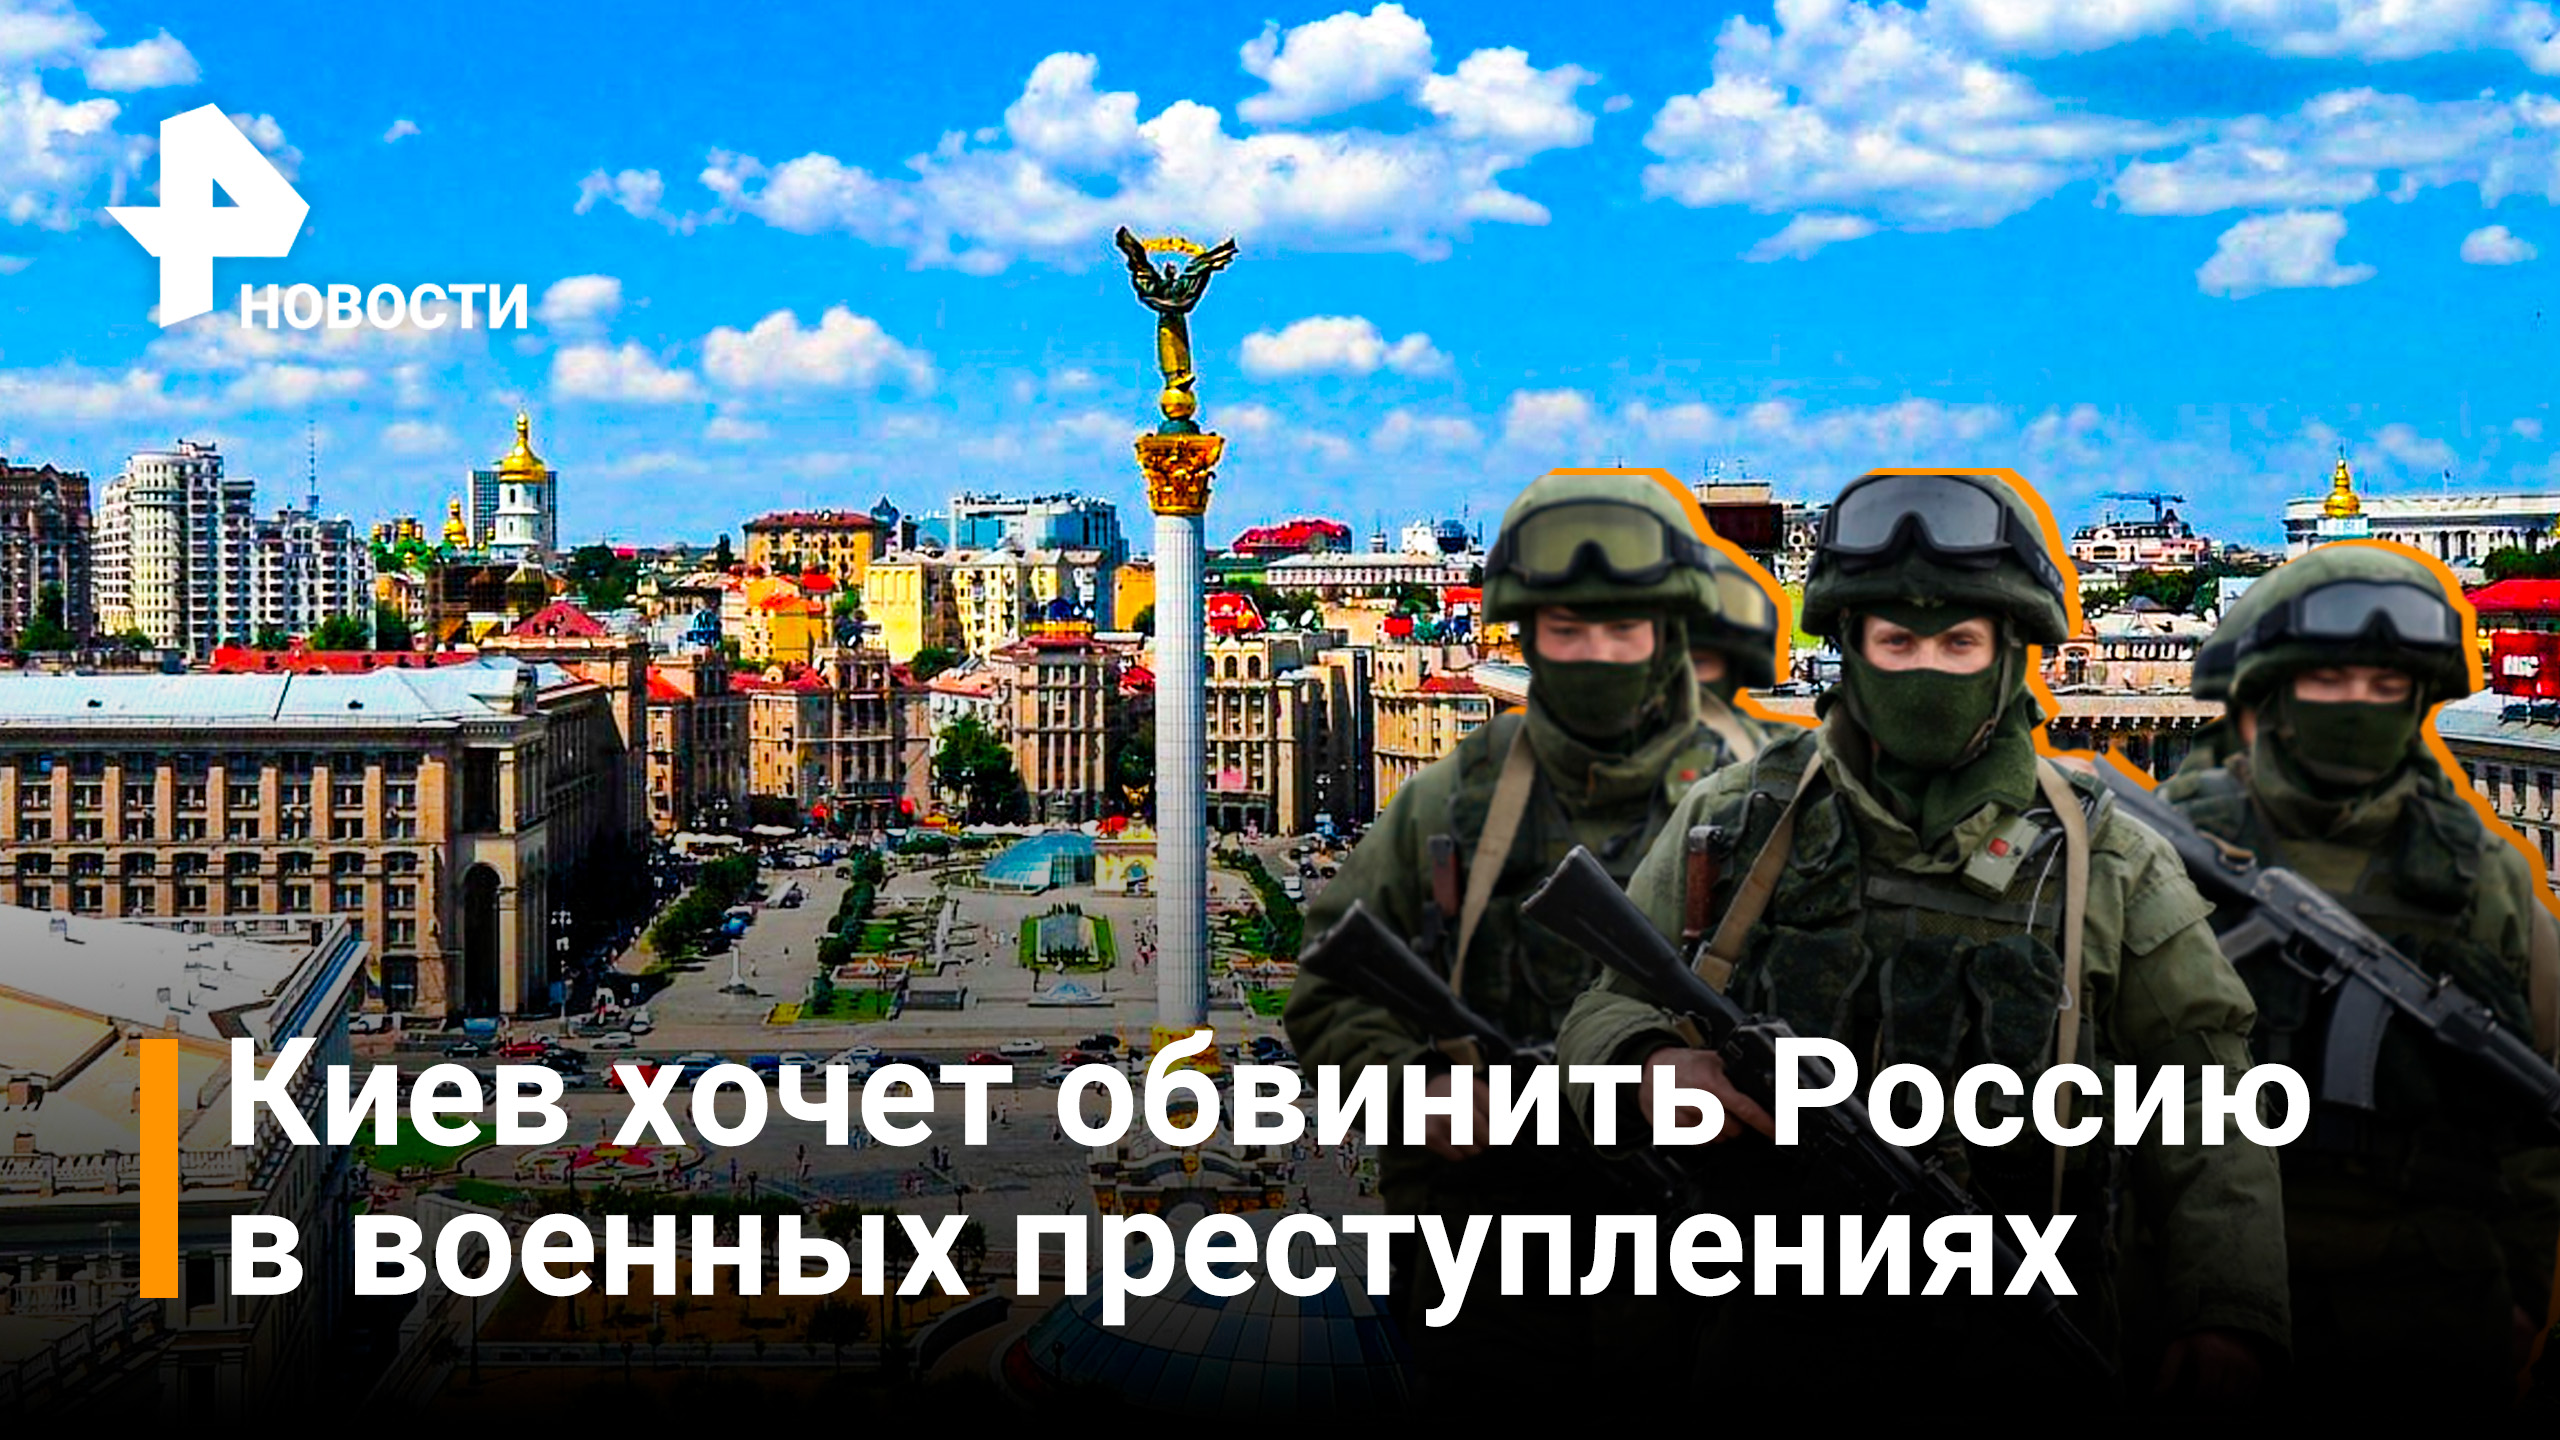 В МО рассказали о готовящейся провокации со стороны Украины / Новости РЕН